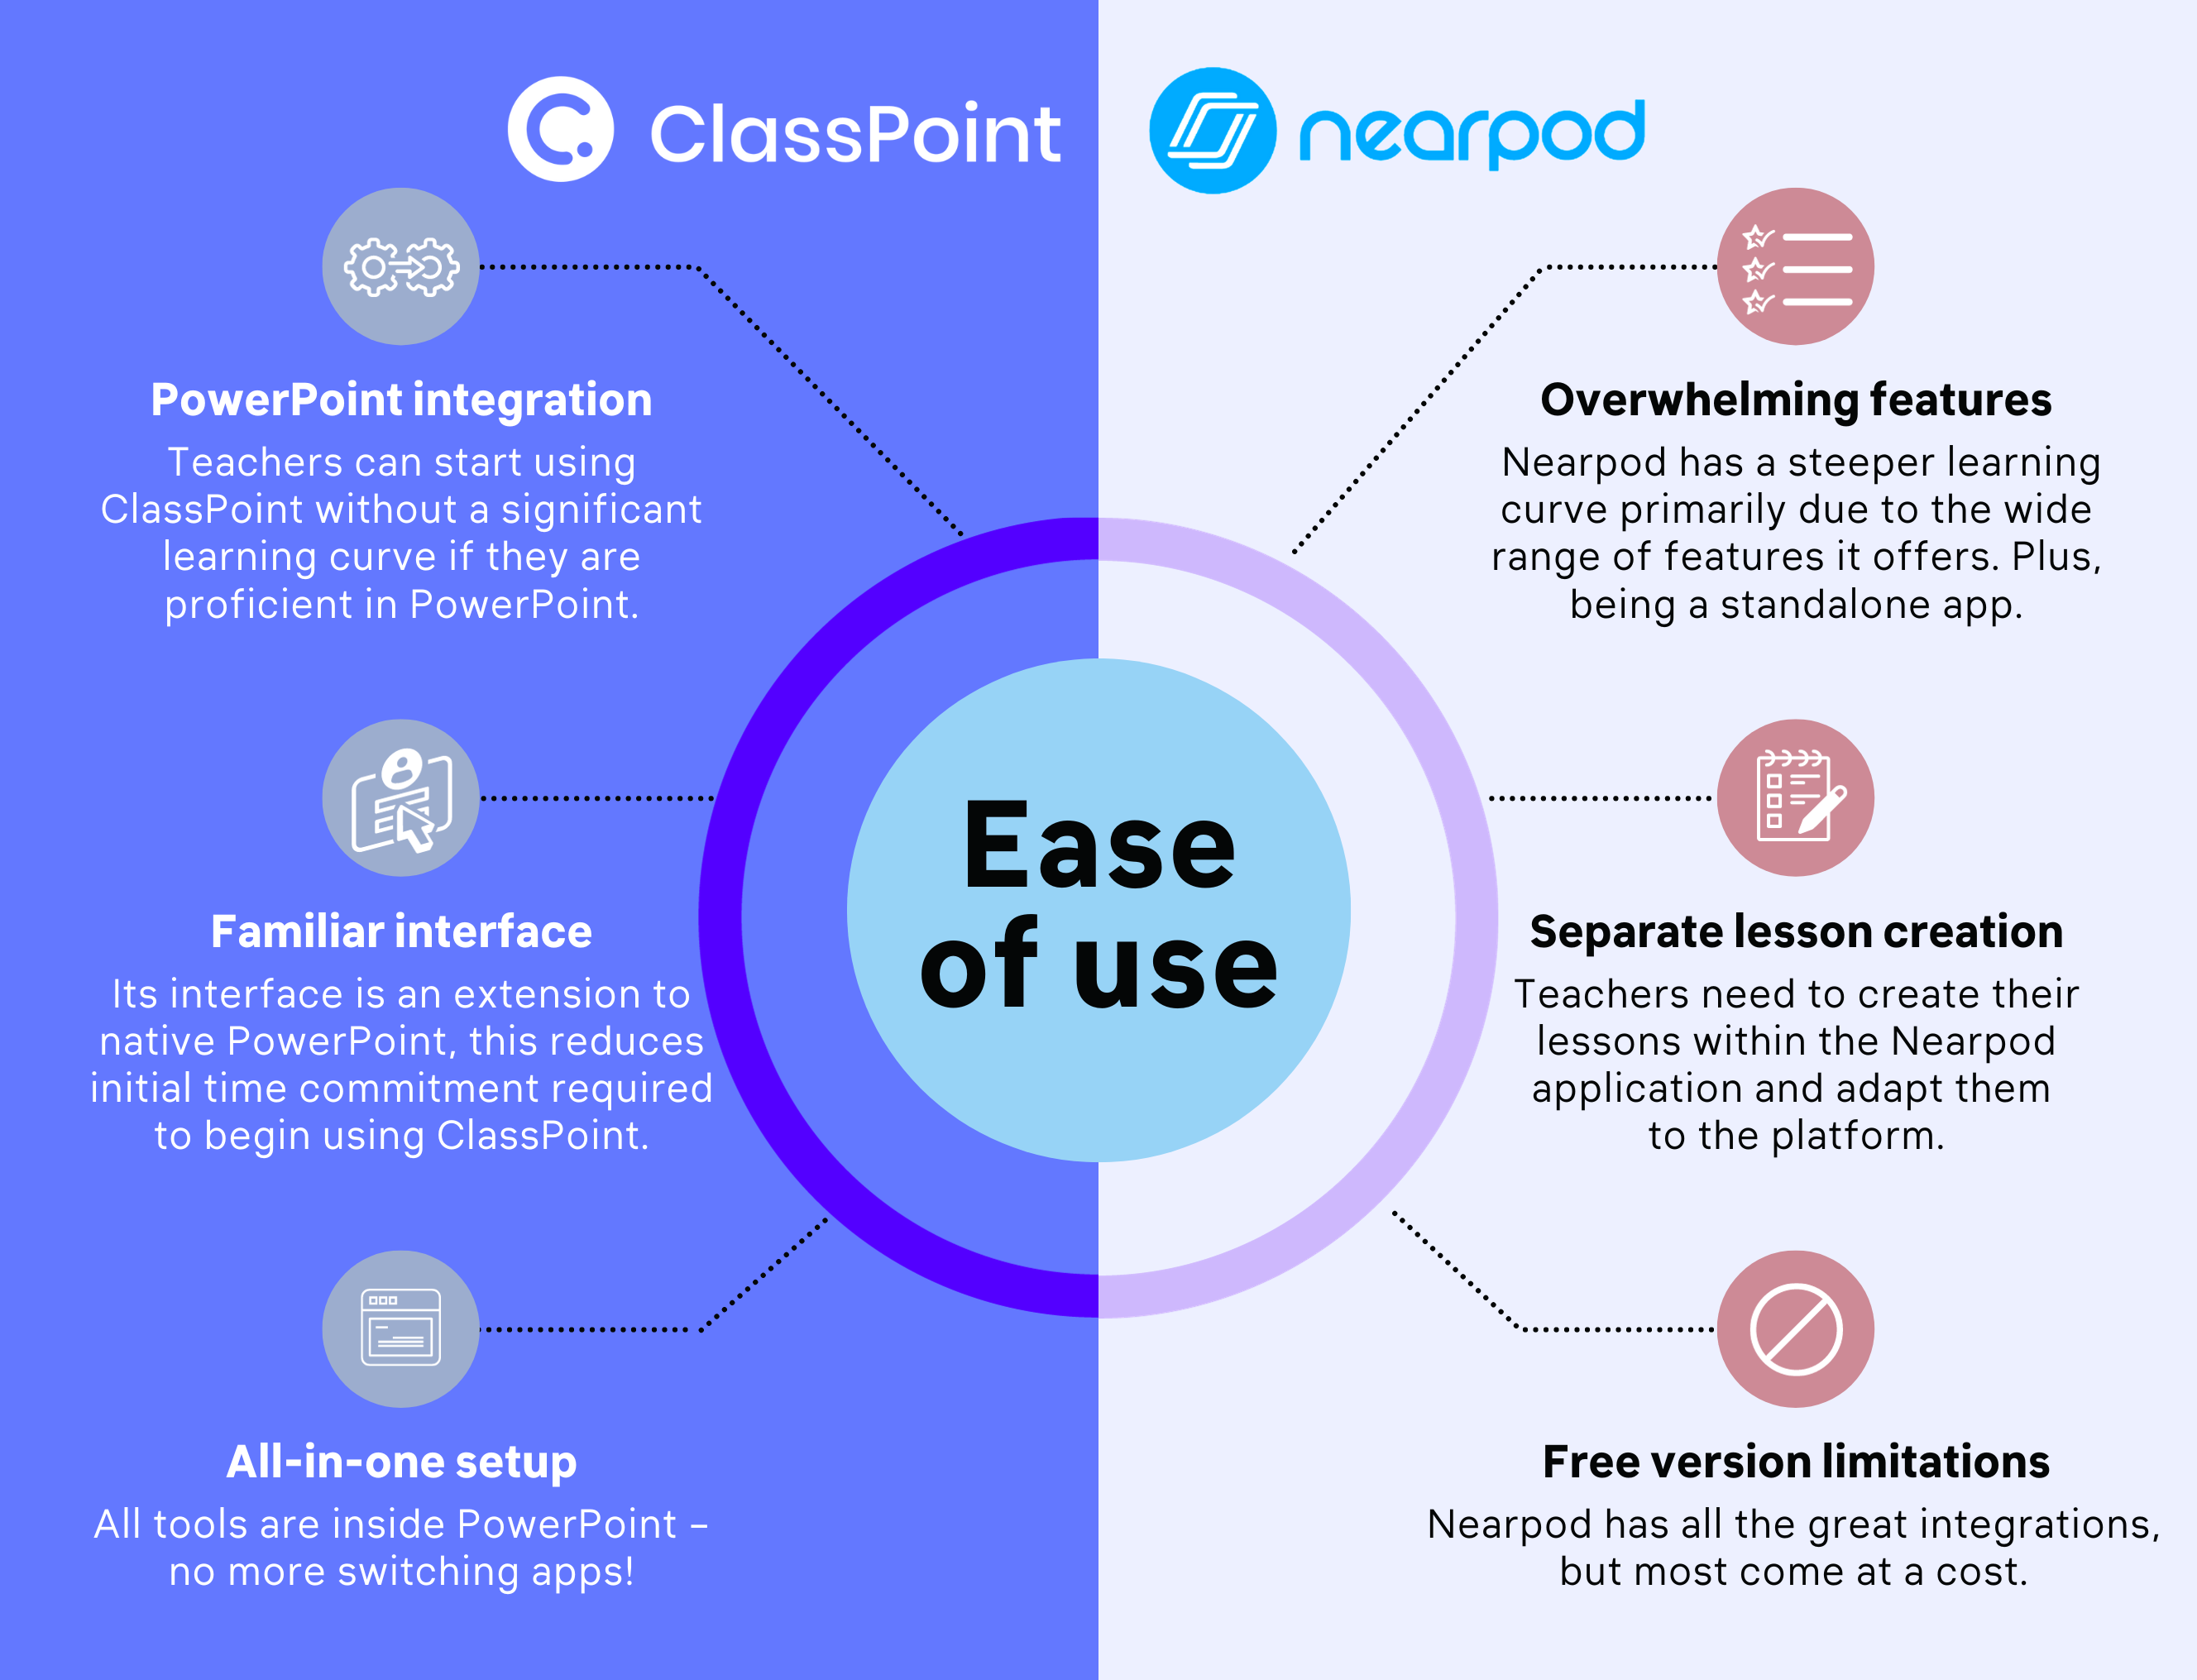 ClassPoint vs Nearpod - Ease of Use